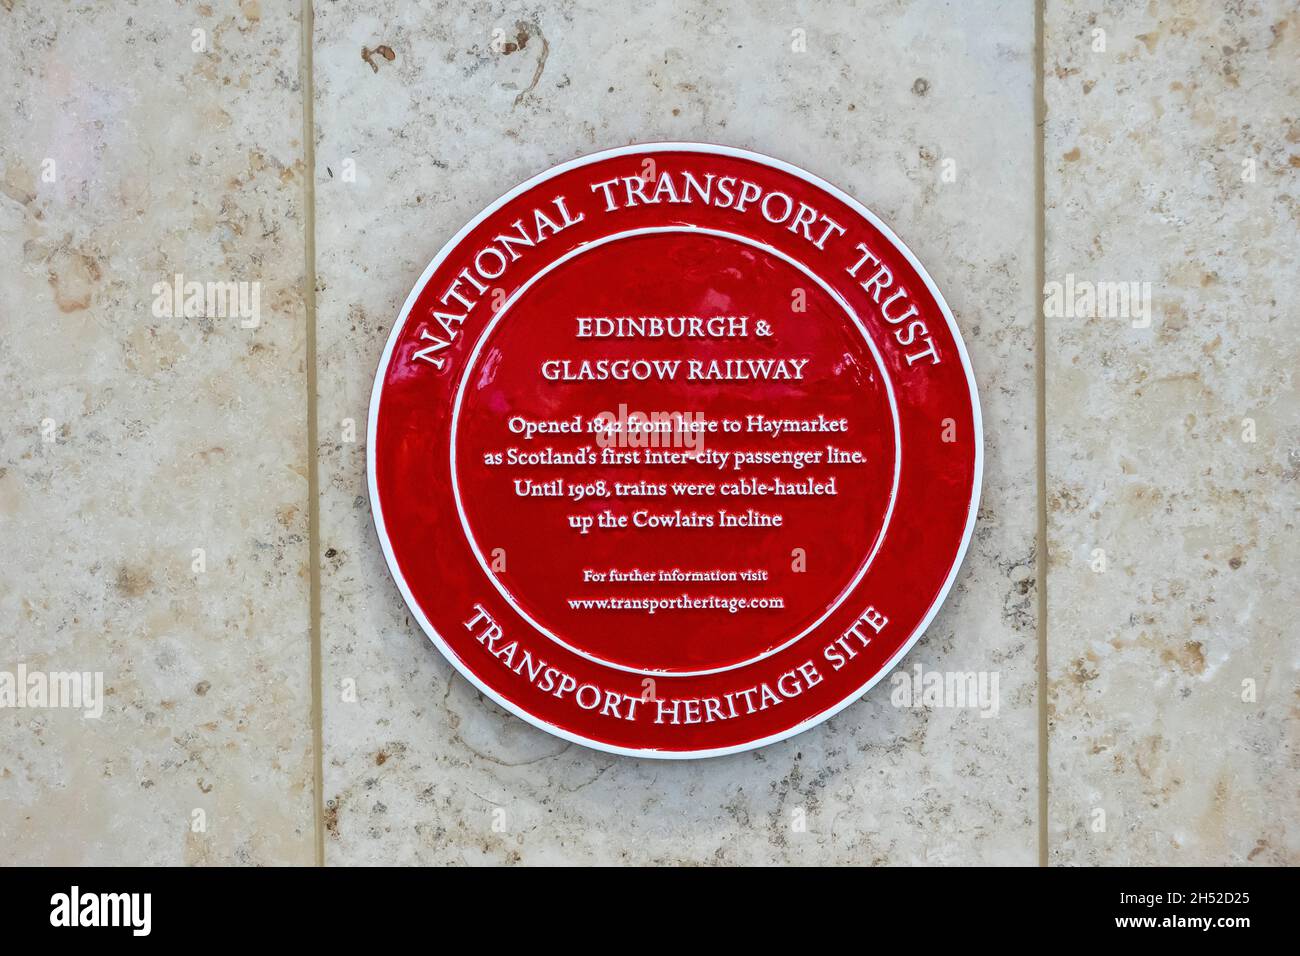 Plaque à la gare de Queen Street Glasgow Écosse Royaume-Uni pour célébrer le patrimoine de transport de Glasgow Queen Street a ouvert en 1842 à Haymarket. Banque D'Images